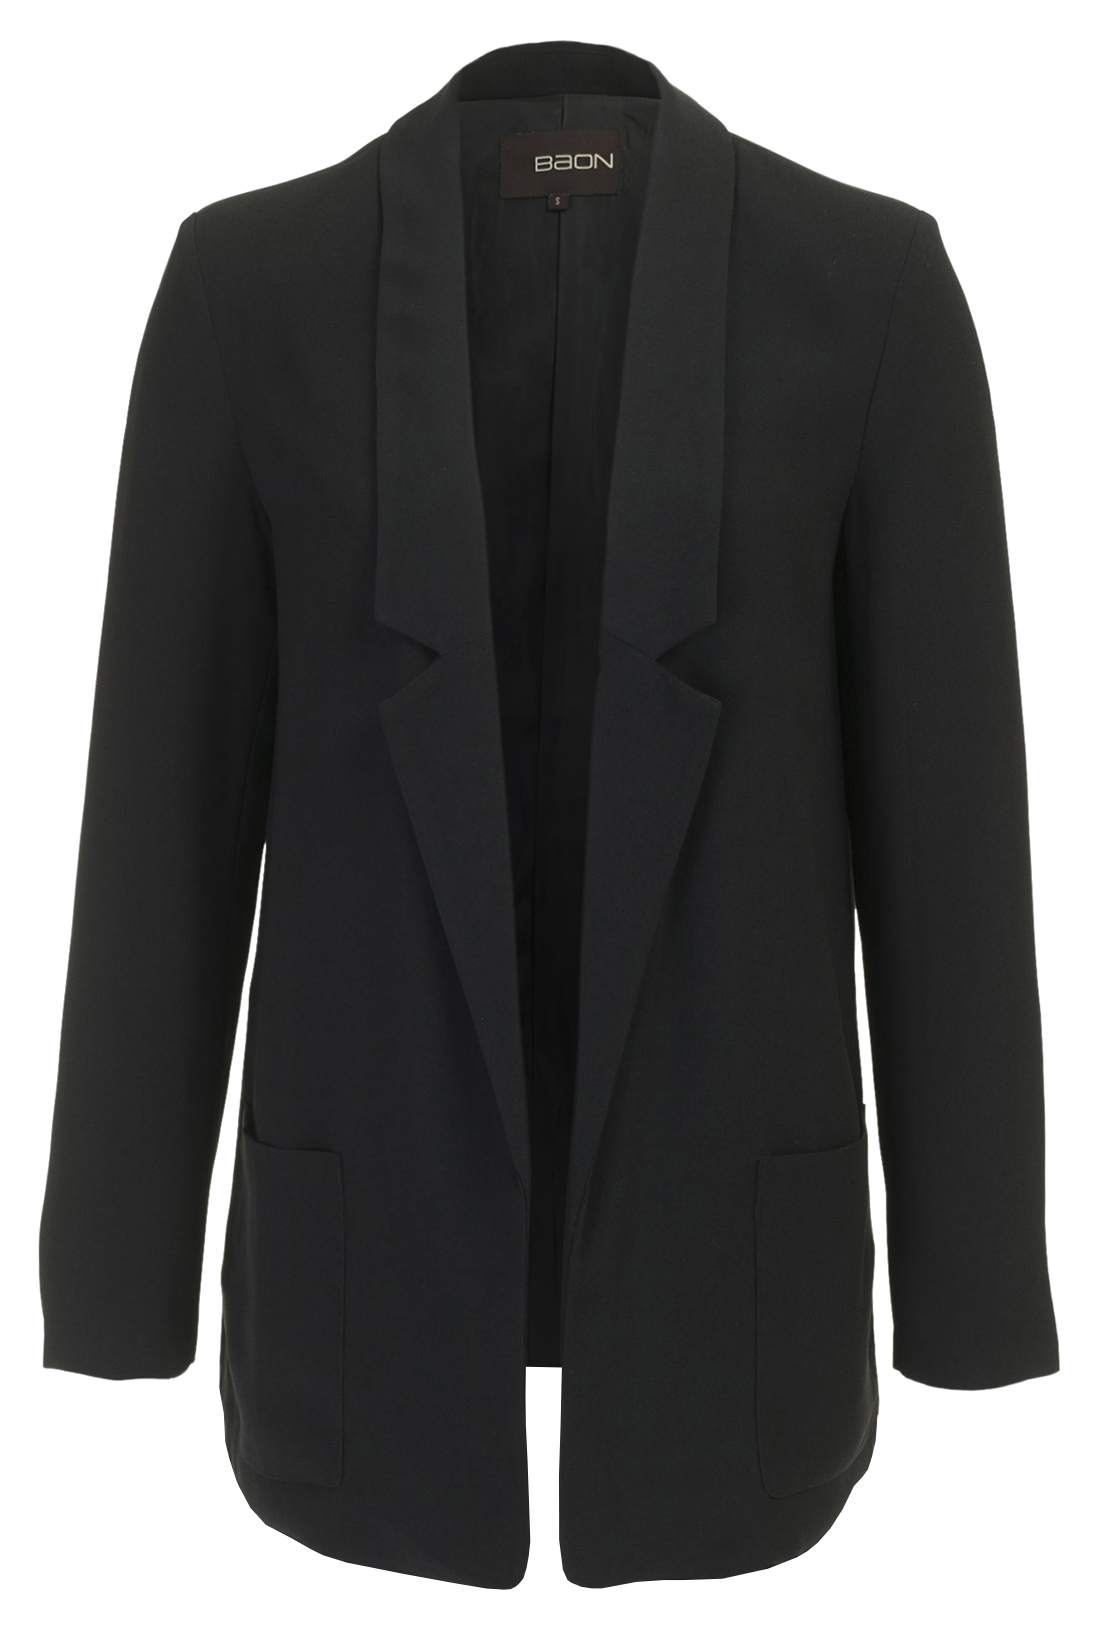 Удлинённый пиджак (арт. baon B127004), размер XXL, цвет черный Удлинённый пиджак (арт. baon B127004) - фото 4